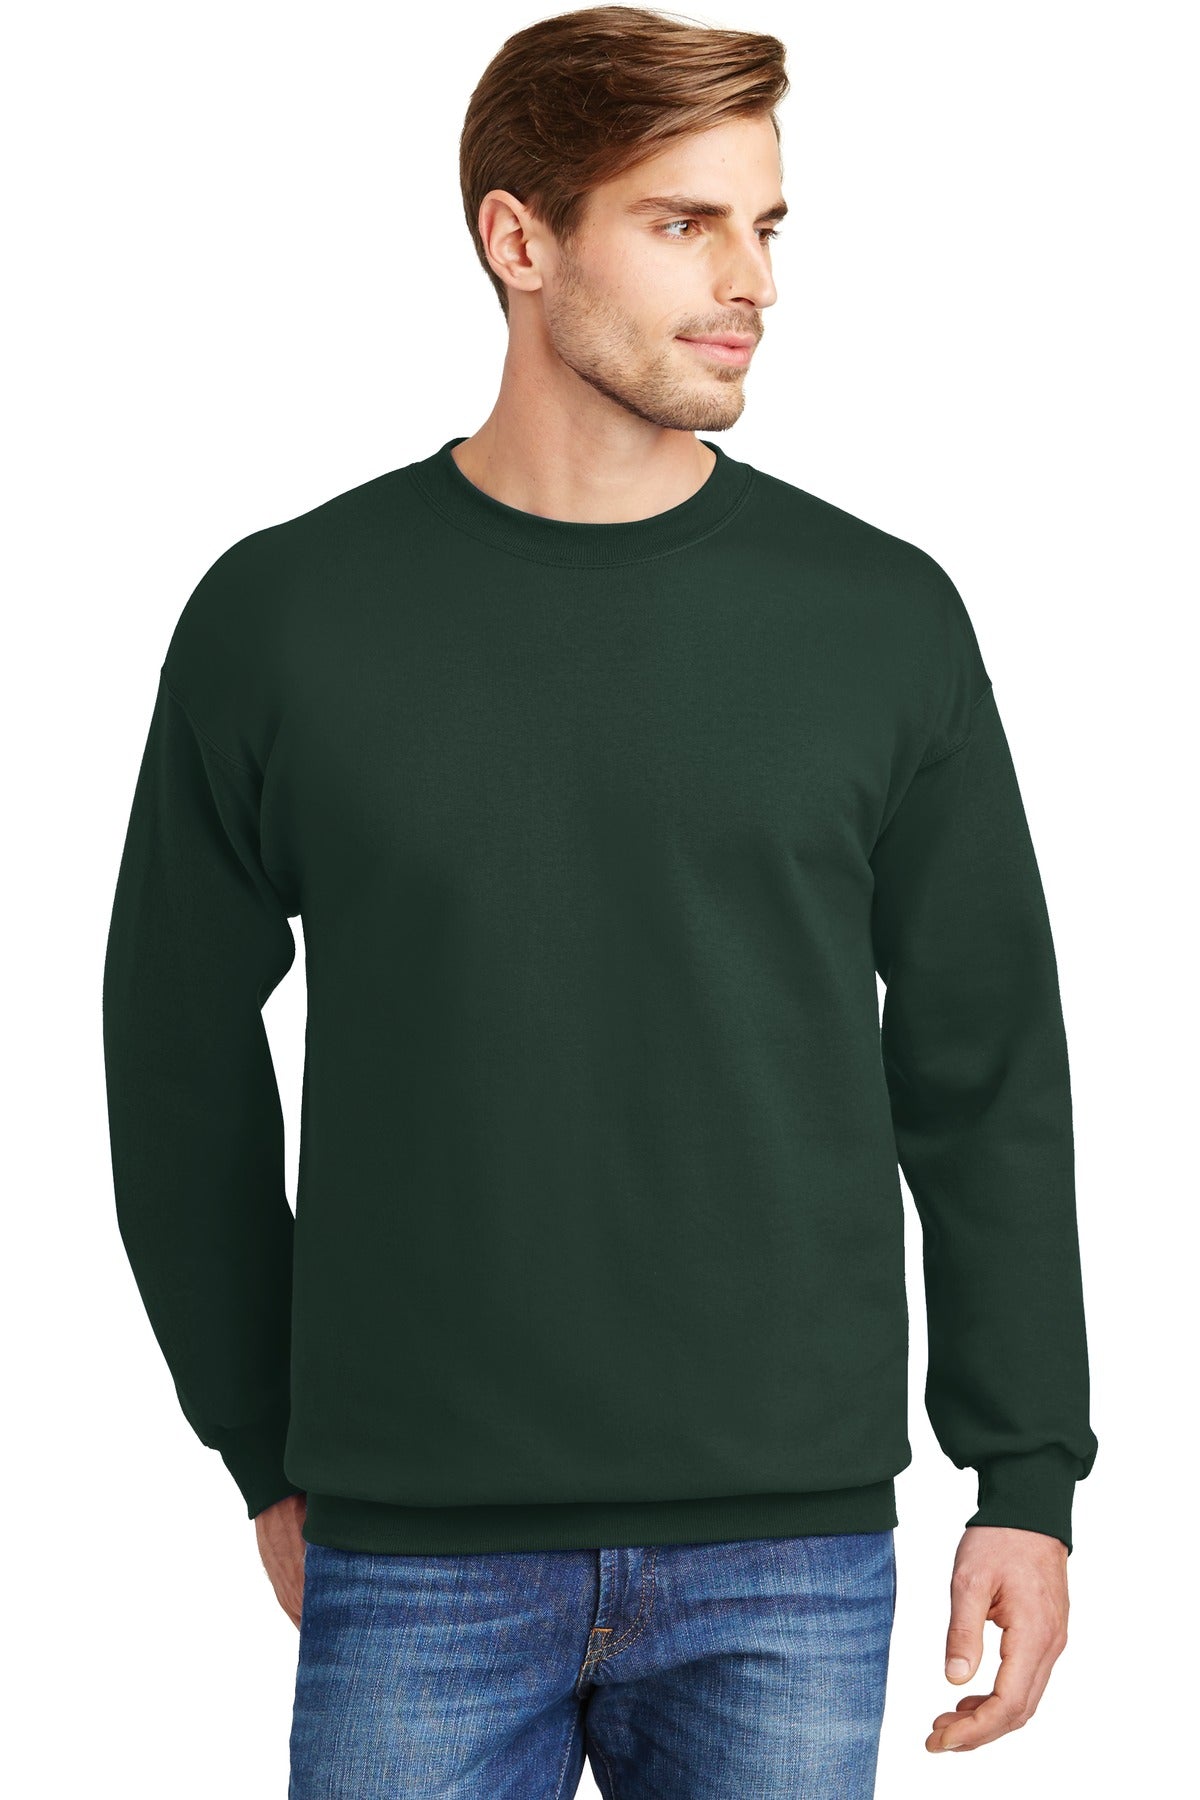 Ultimate Cotton® Crewneck Sweatshirt - Hanes F260